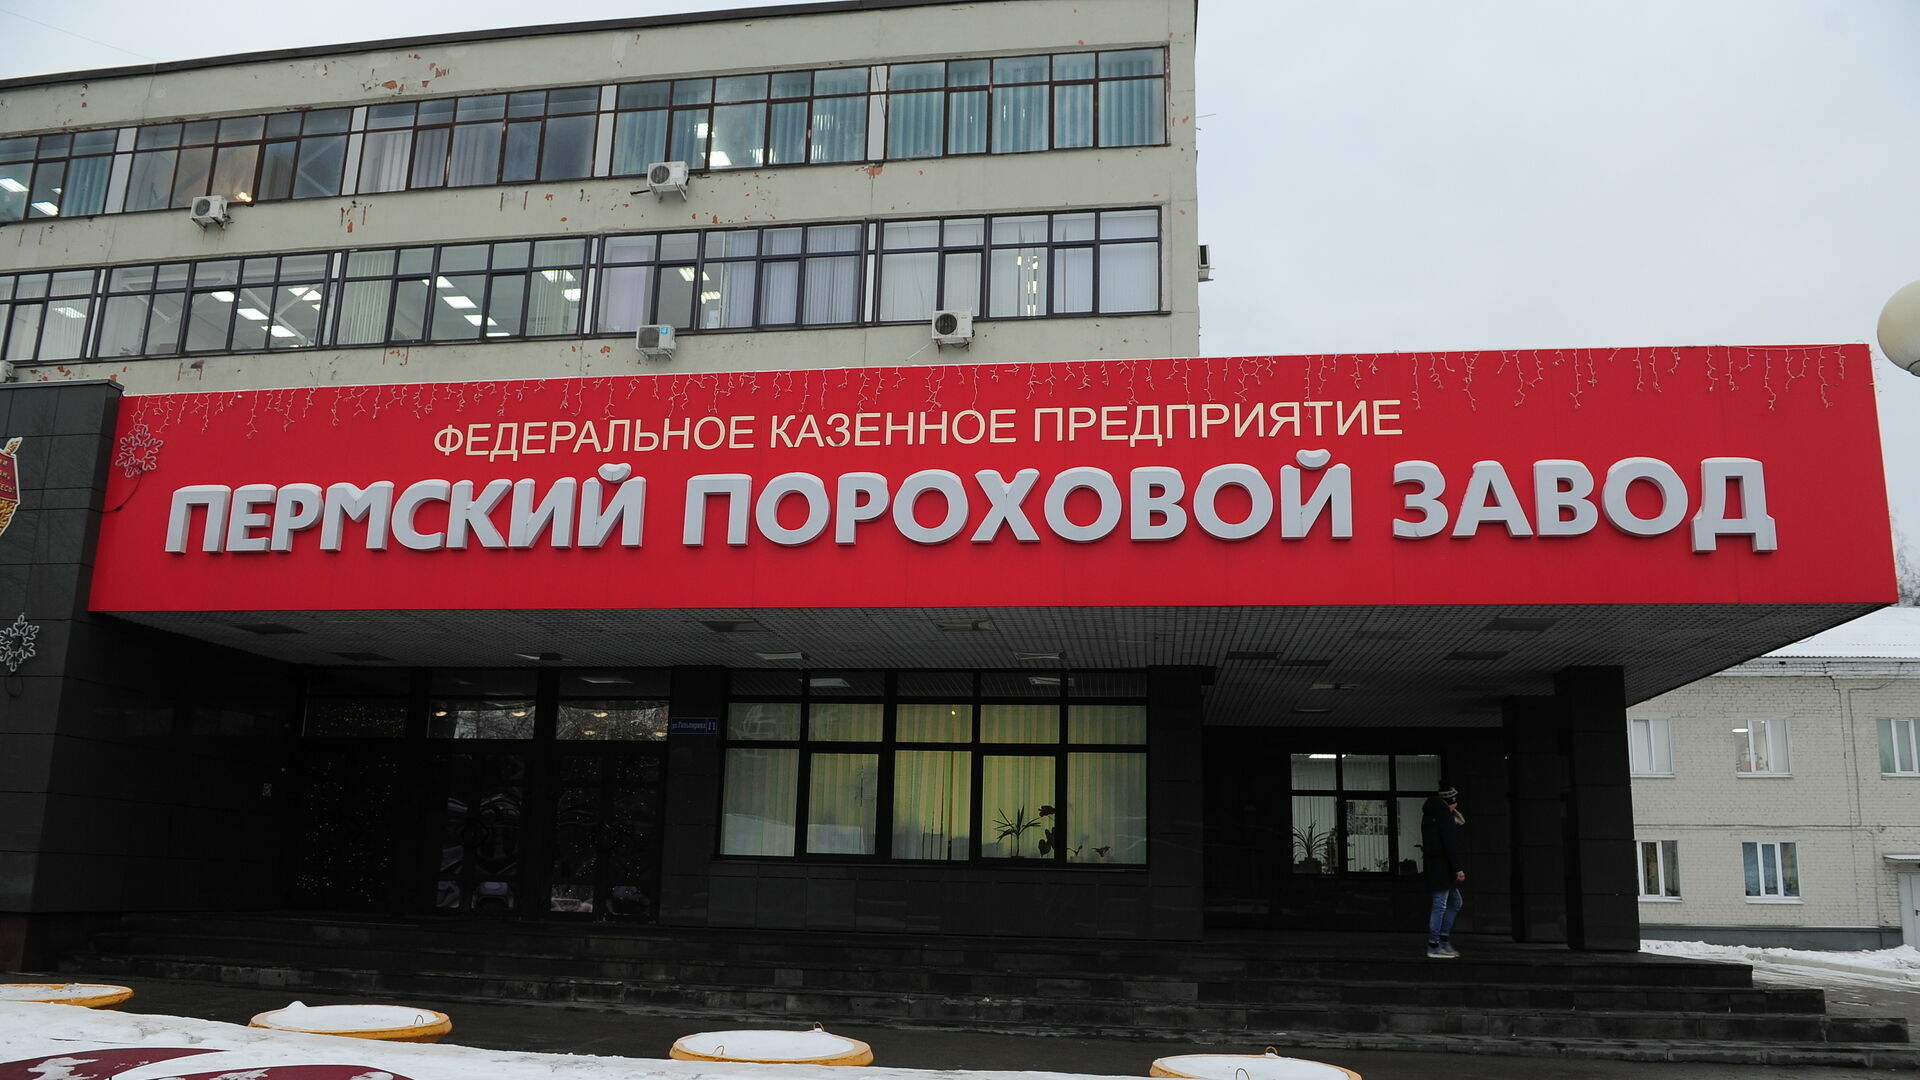 Гендиректор Пермского порохового завода обвиняется в коммерческом подкупе